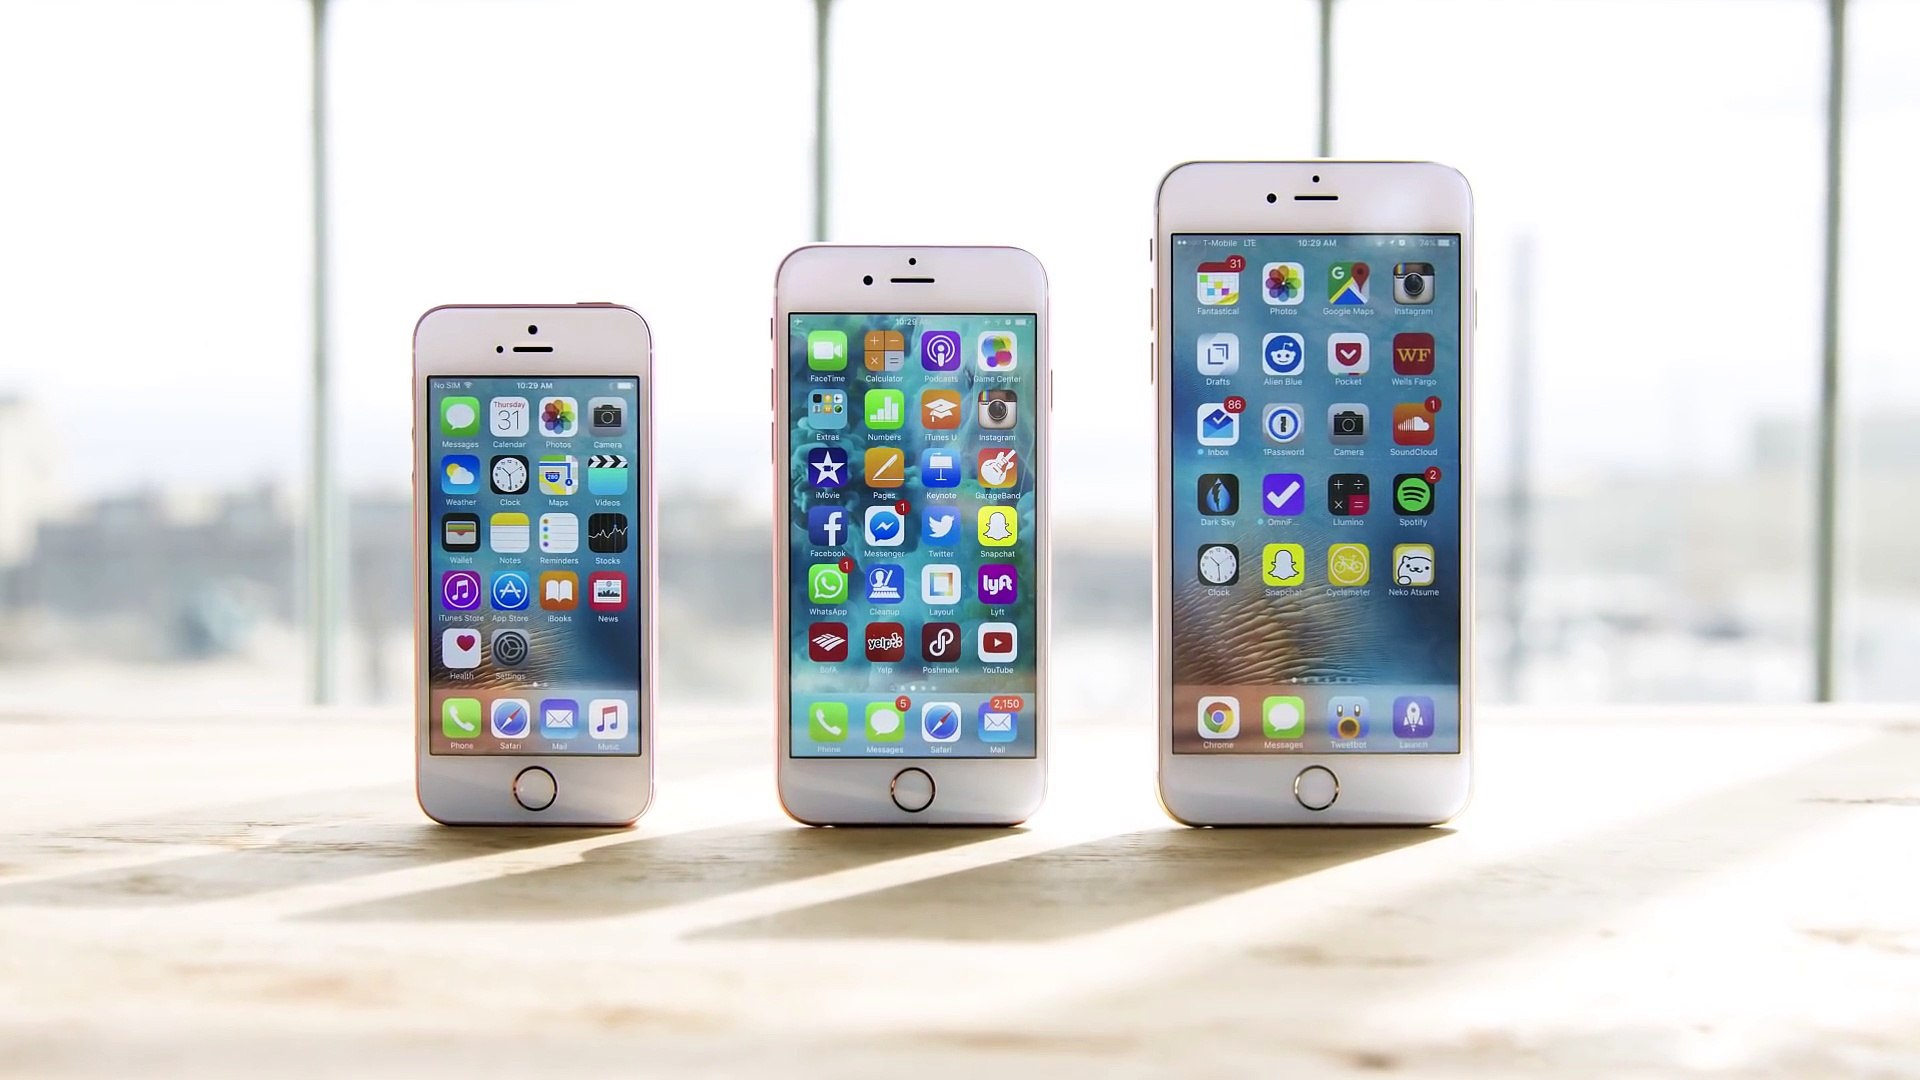 Сравнить айфон se. Apple iphone 6se. Айфон se vs айфон 6s. Iphone 6s vs se 2016. Iphone se 6 Plus.